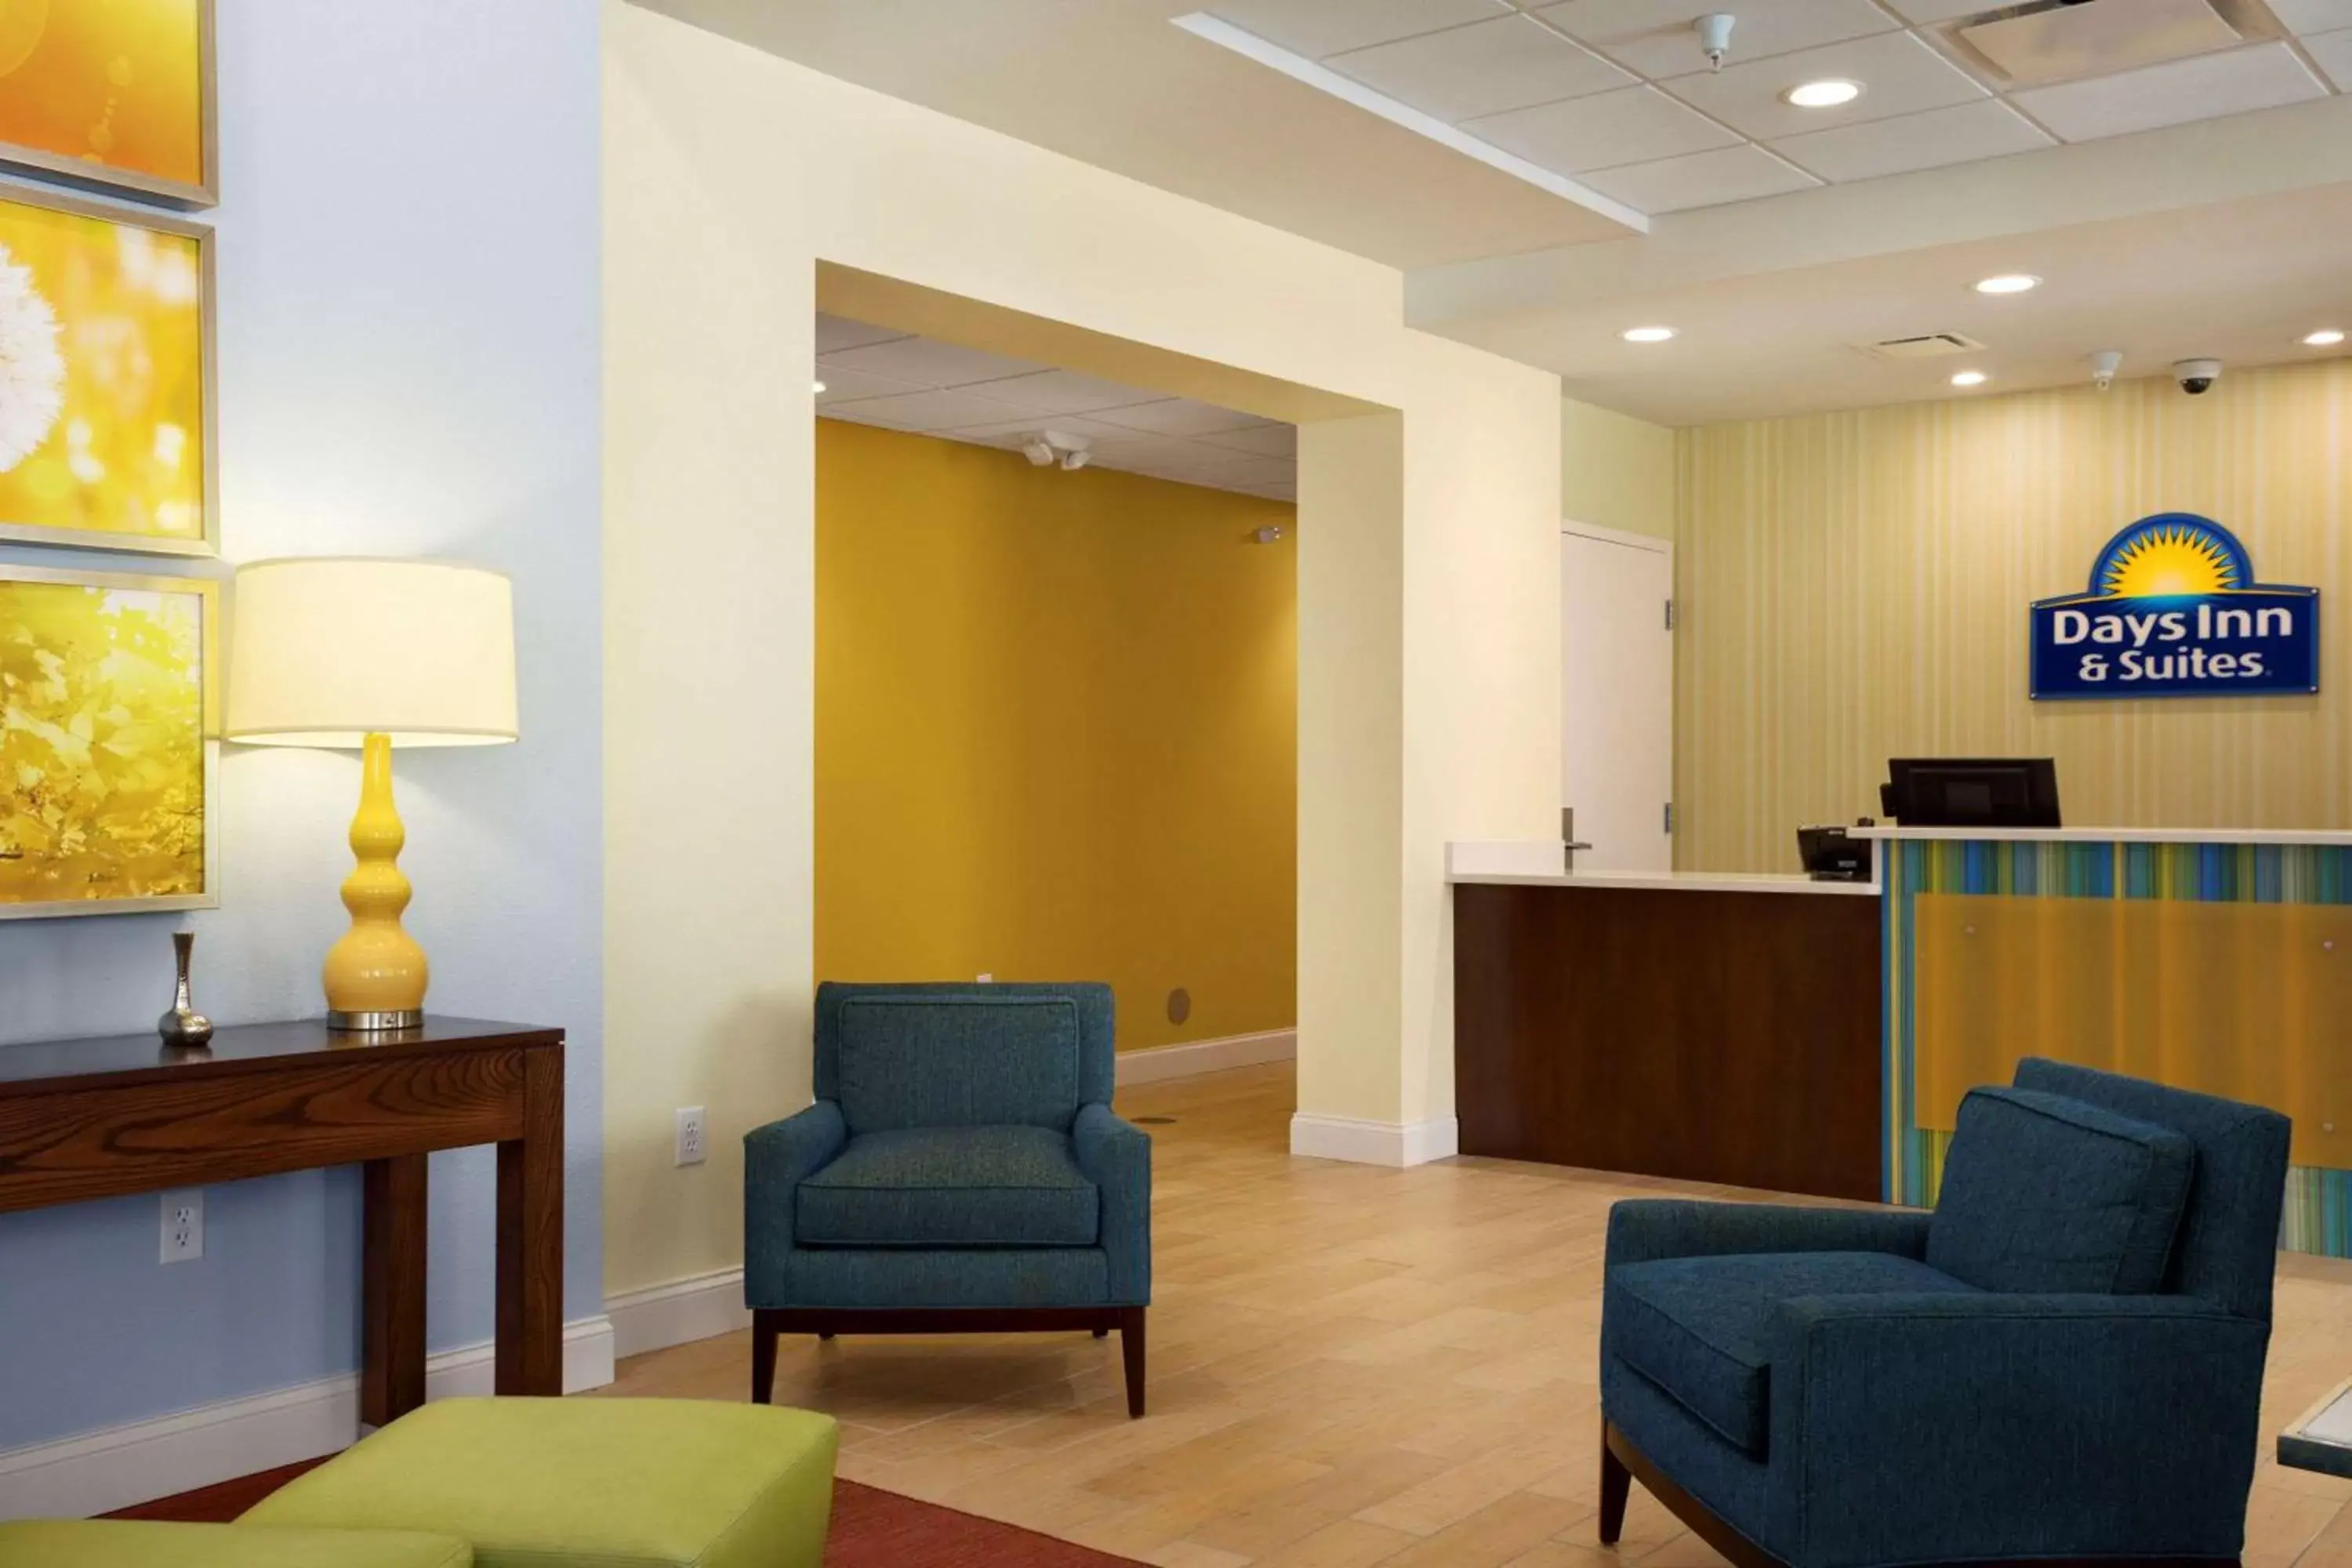 Lobby or reception, Lobby/Reception in Days Inn & Suites by Wyndham Caldwell